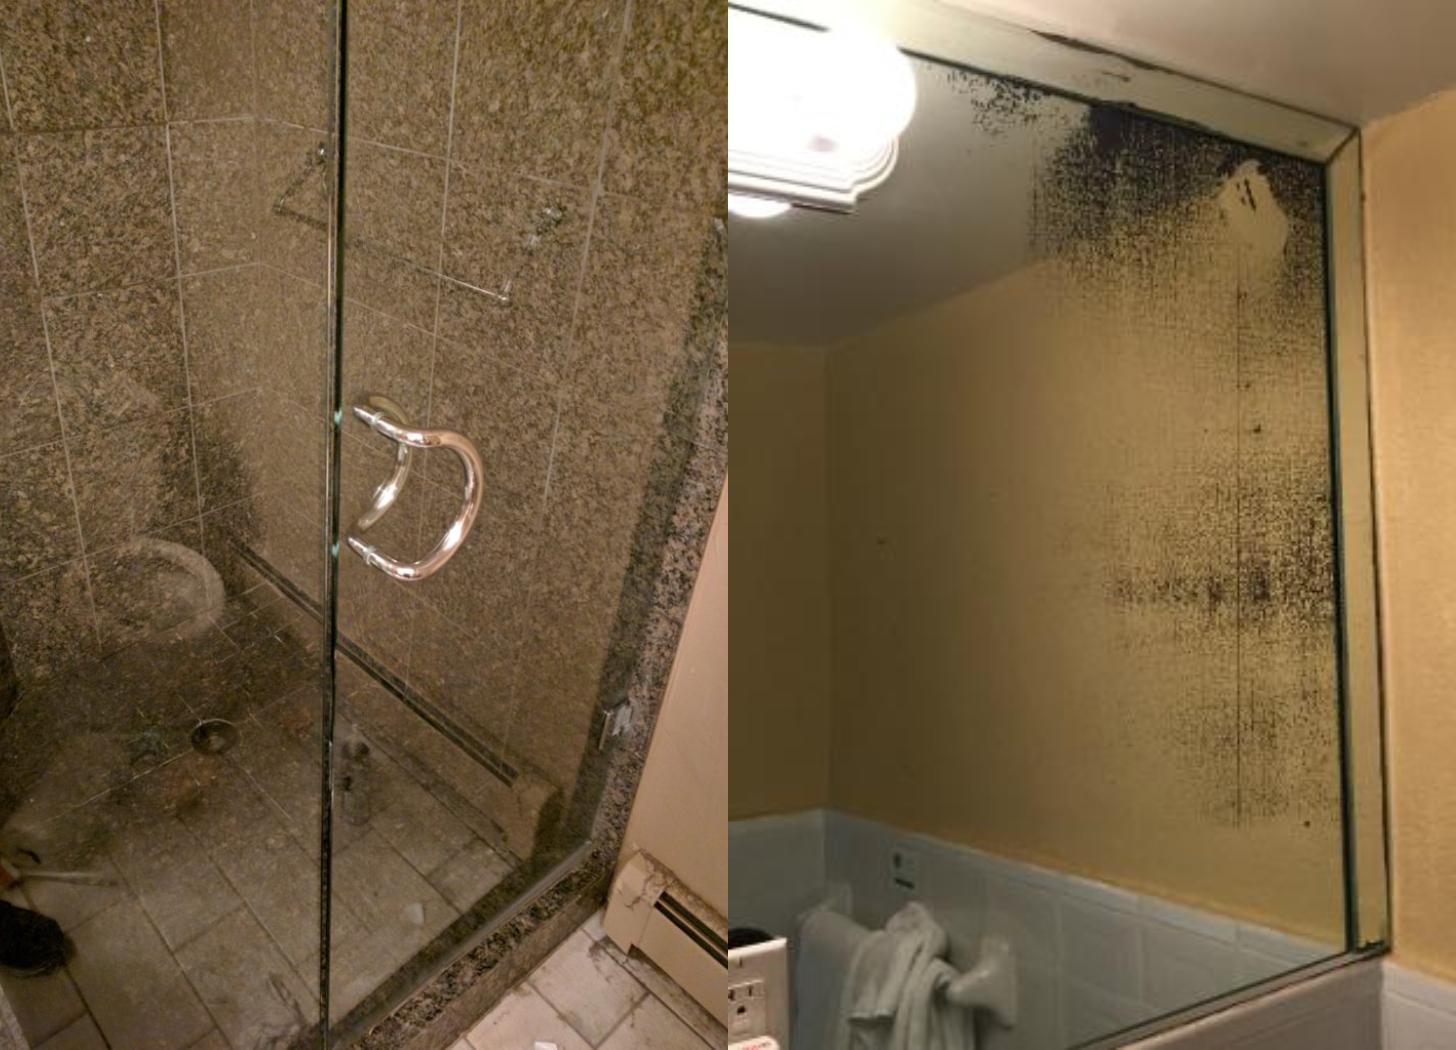 Αφαιρέστε τα άλατα από την γυάλινη ντουζιέρα και τον καθρέφτη του μπάνιου με ταλκ